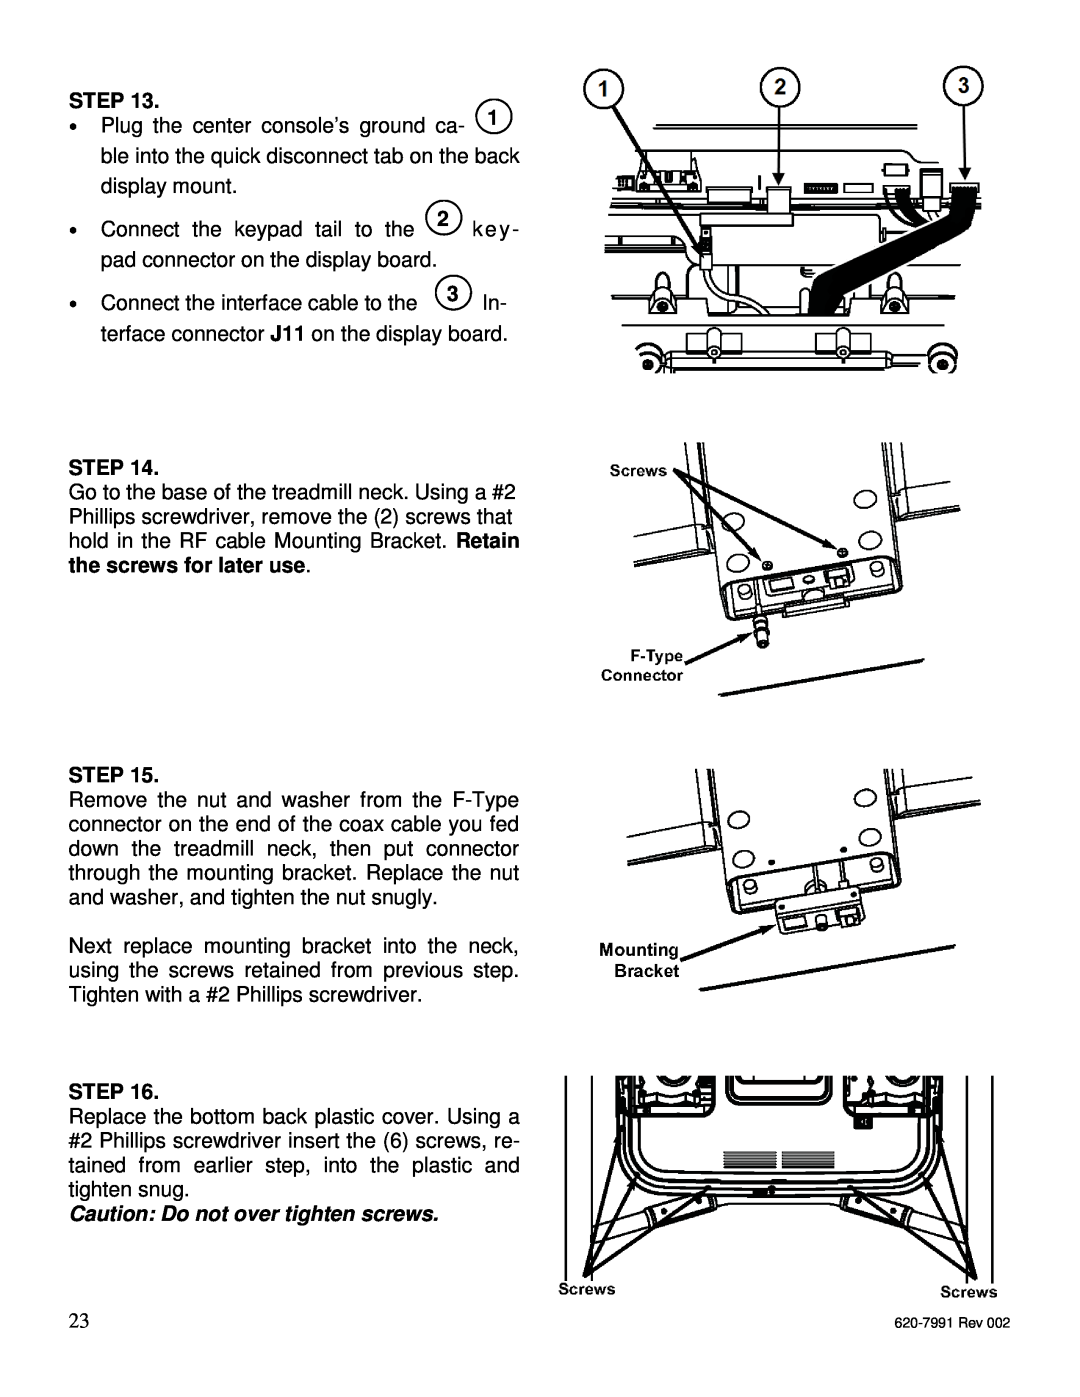 Star Trac E-UBi, E-STi, E-TBTi, E-RBi, E-TRi manual Step, Caution Do not over tighten screws 